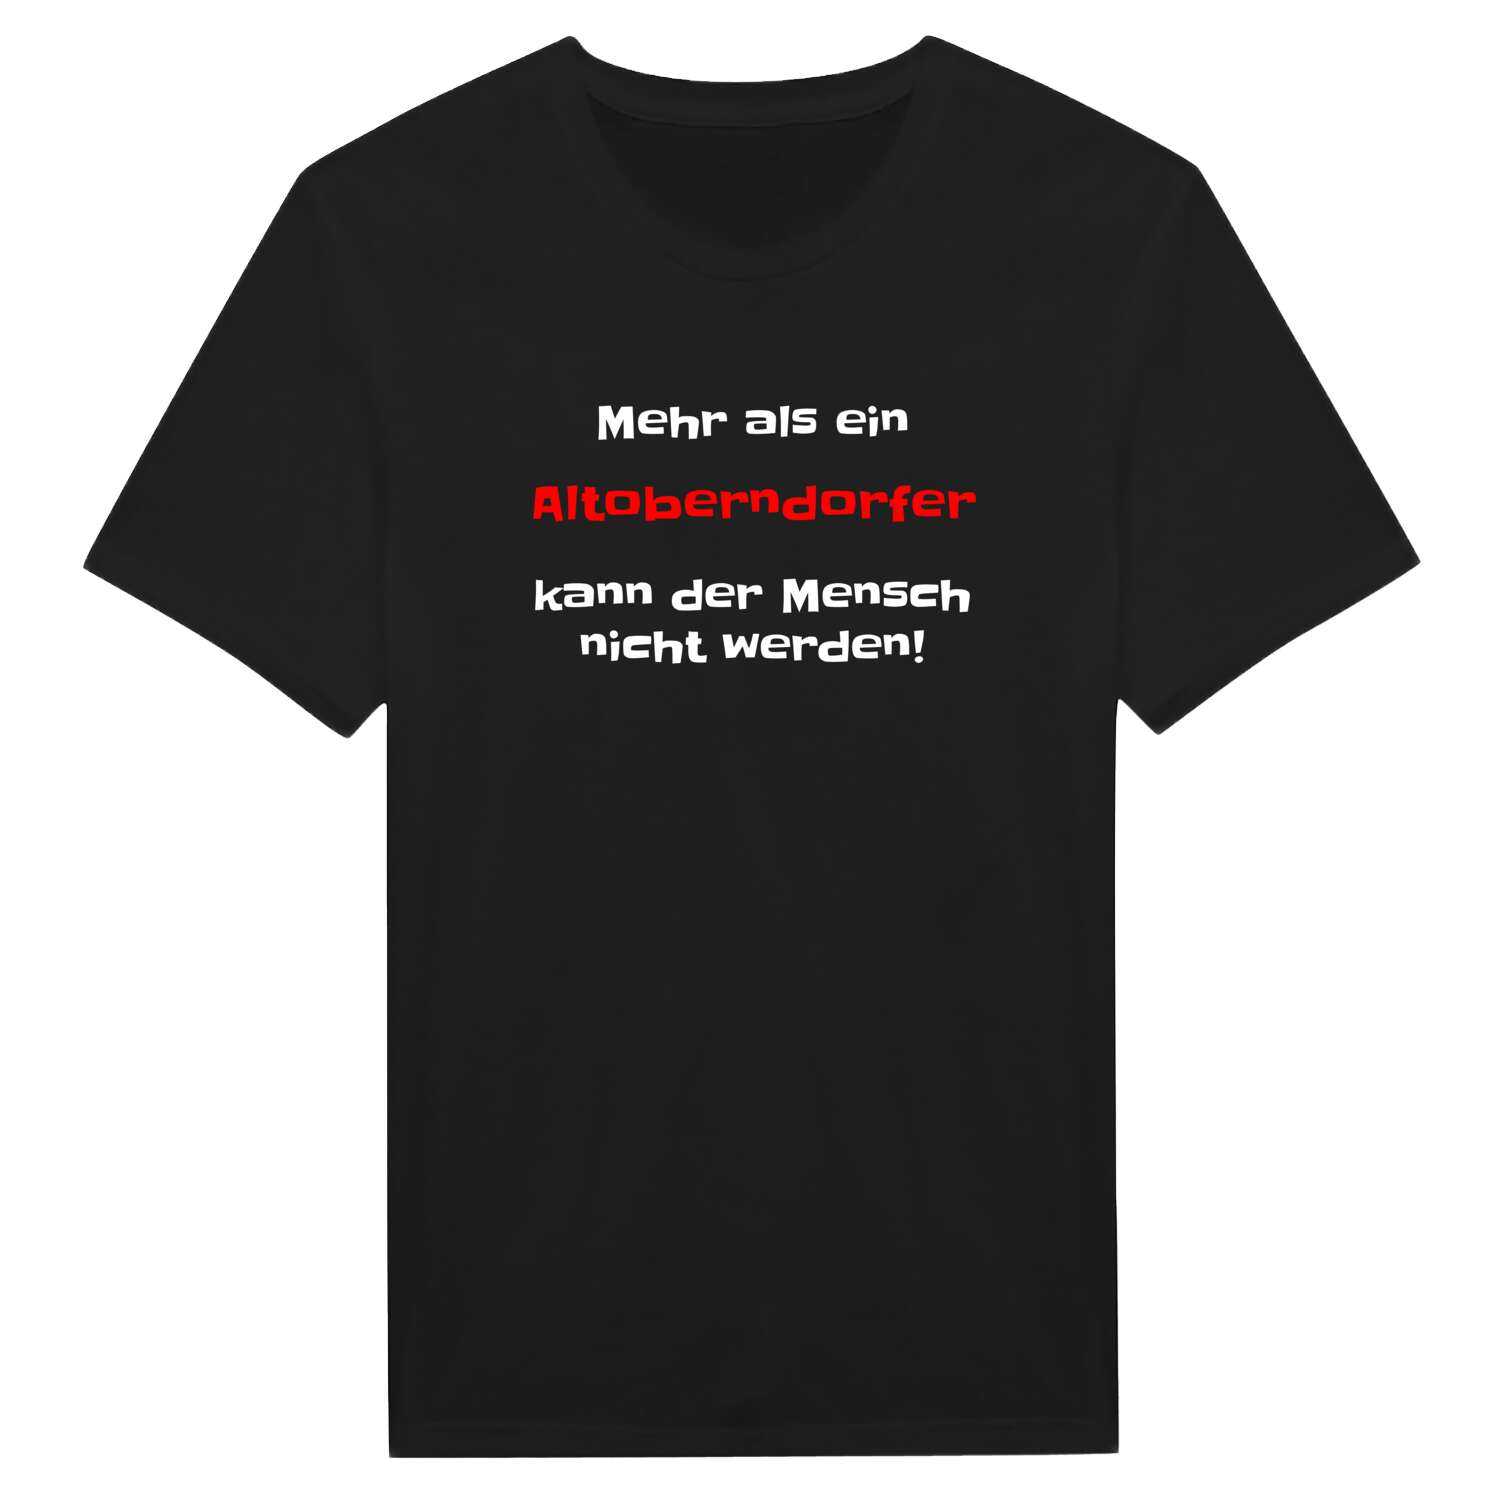 Altoberndorf T-Shirt »Mehr als ein«